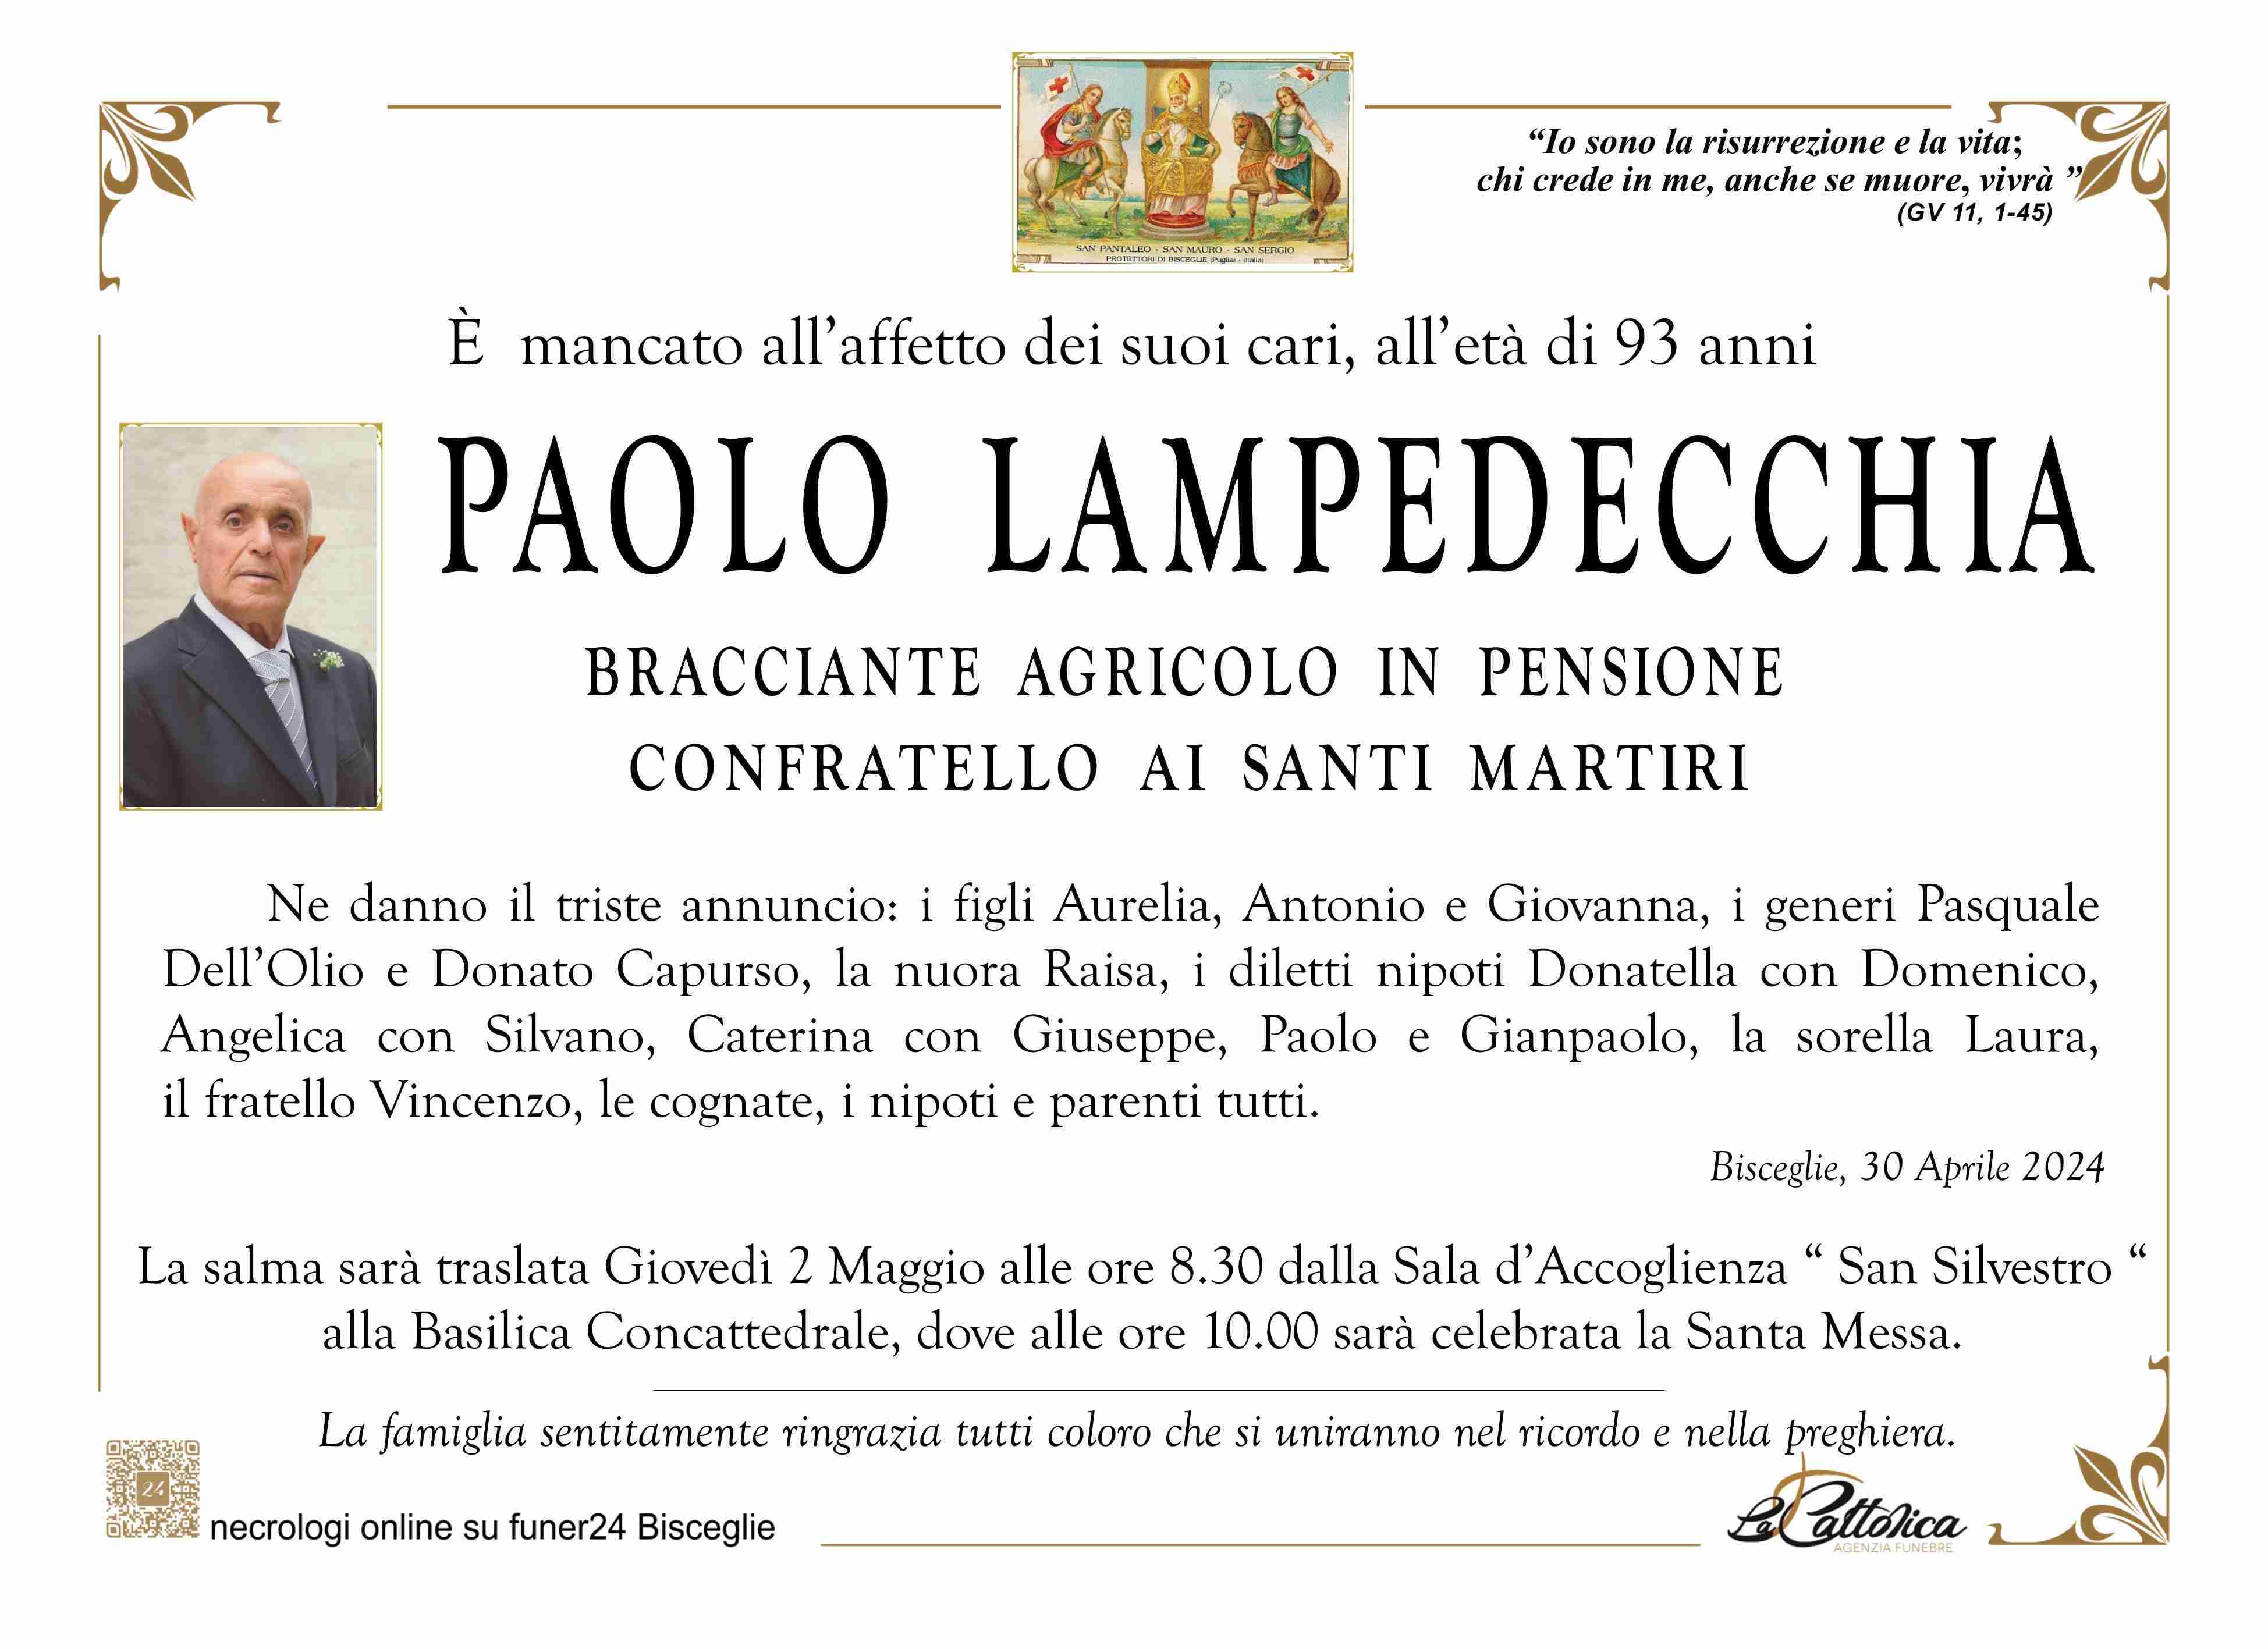 Paolo Lampedecchia